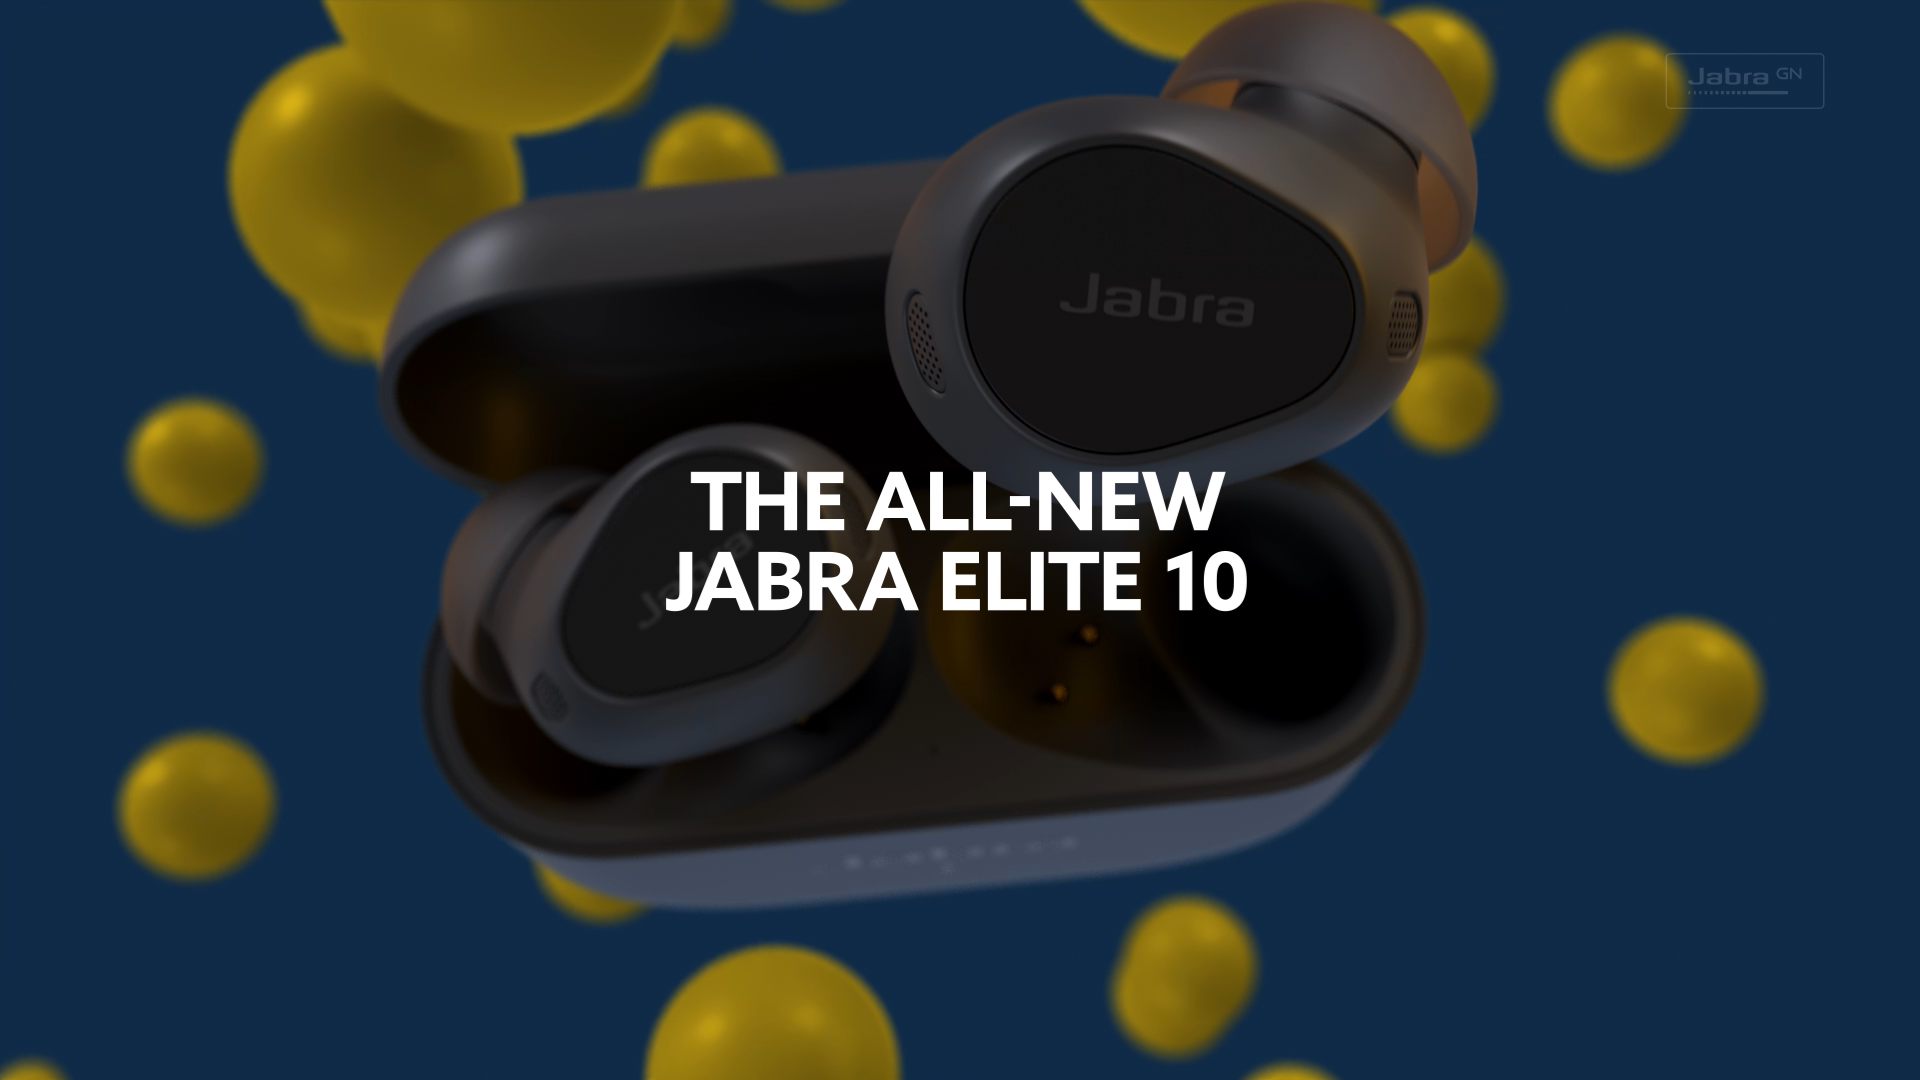 Jabra Elite 10 - True wireless earphones with mic - in-ear